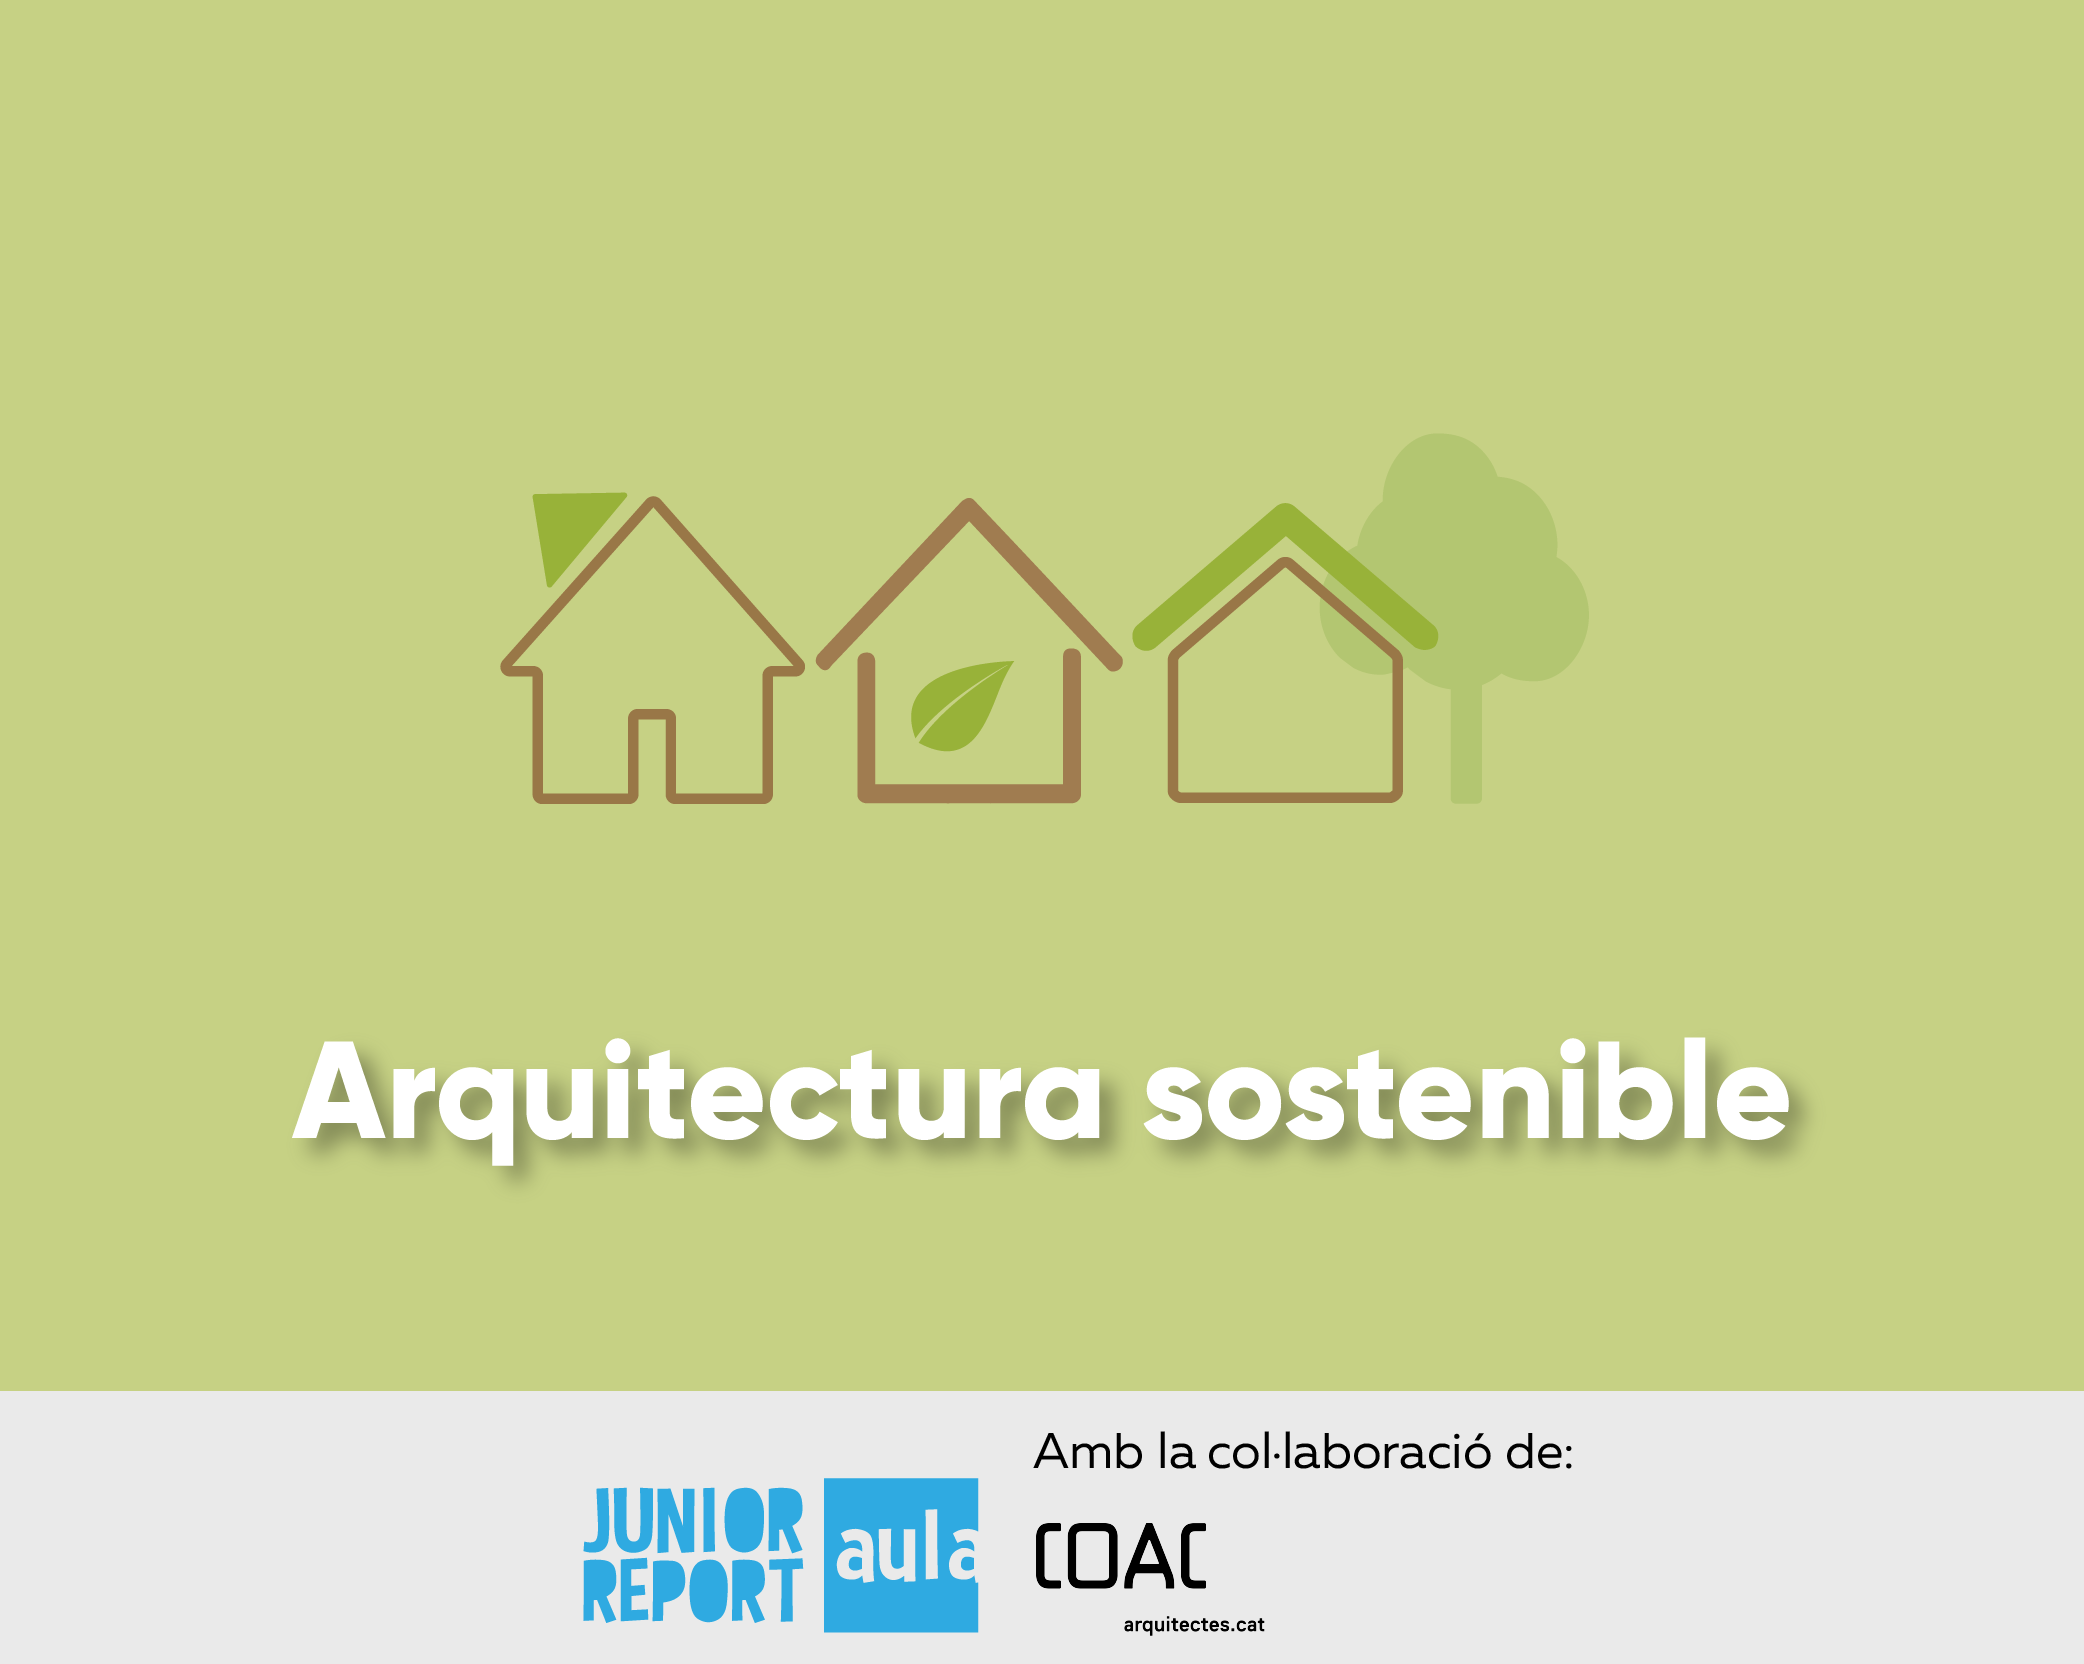 Unitat Didàctica sobre arquitectura sostenible en col·laboració amb COAC